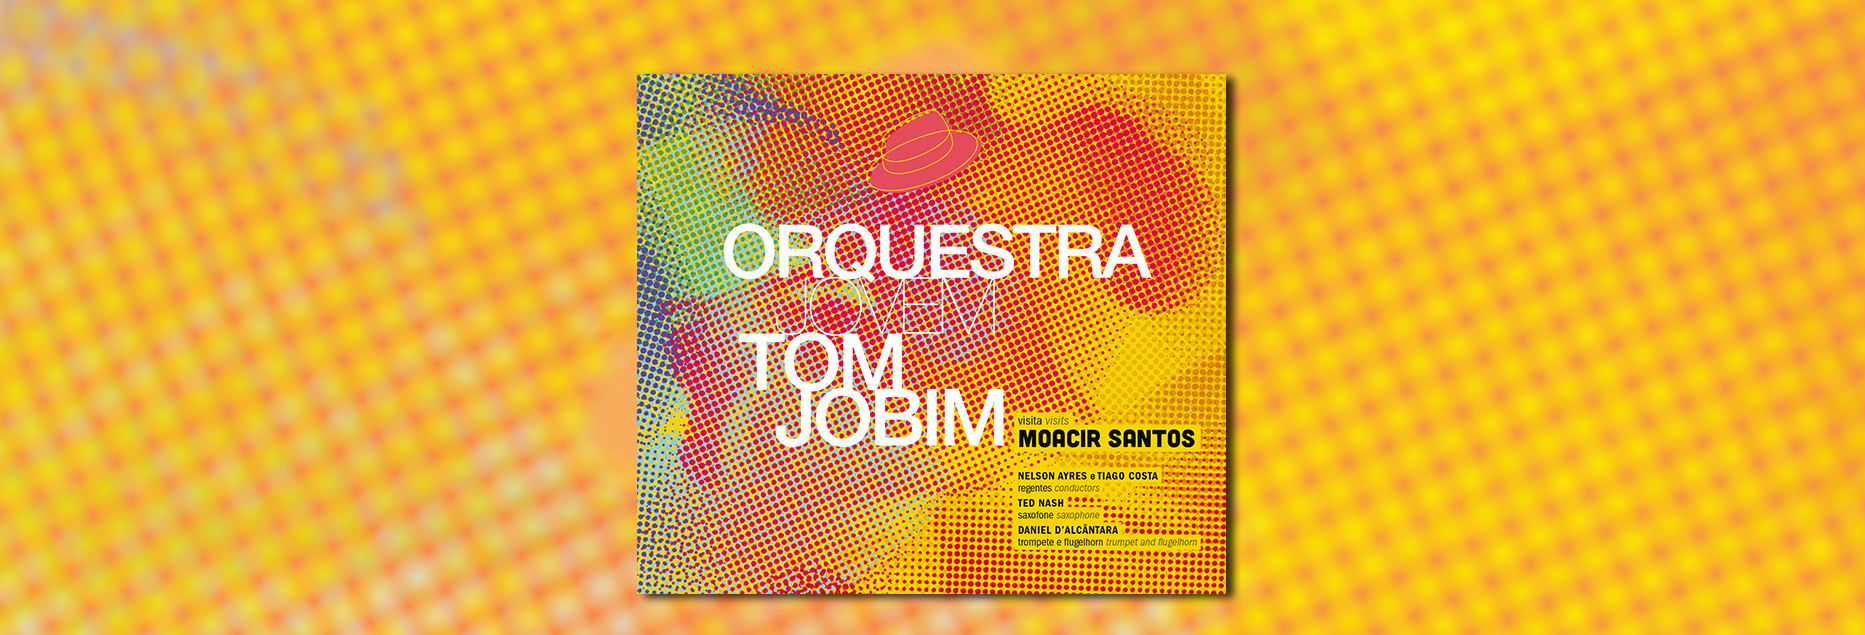 Orquestra Tom Jobim grava Moacir Santos e faz concertos em São Paulo